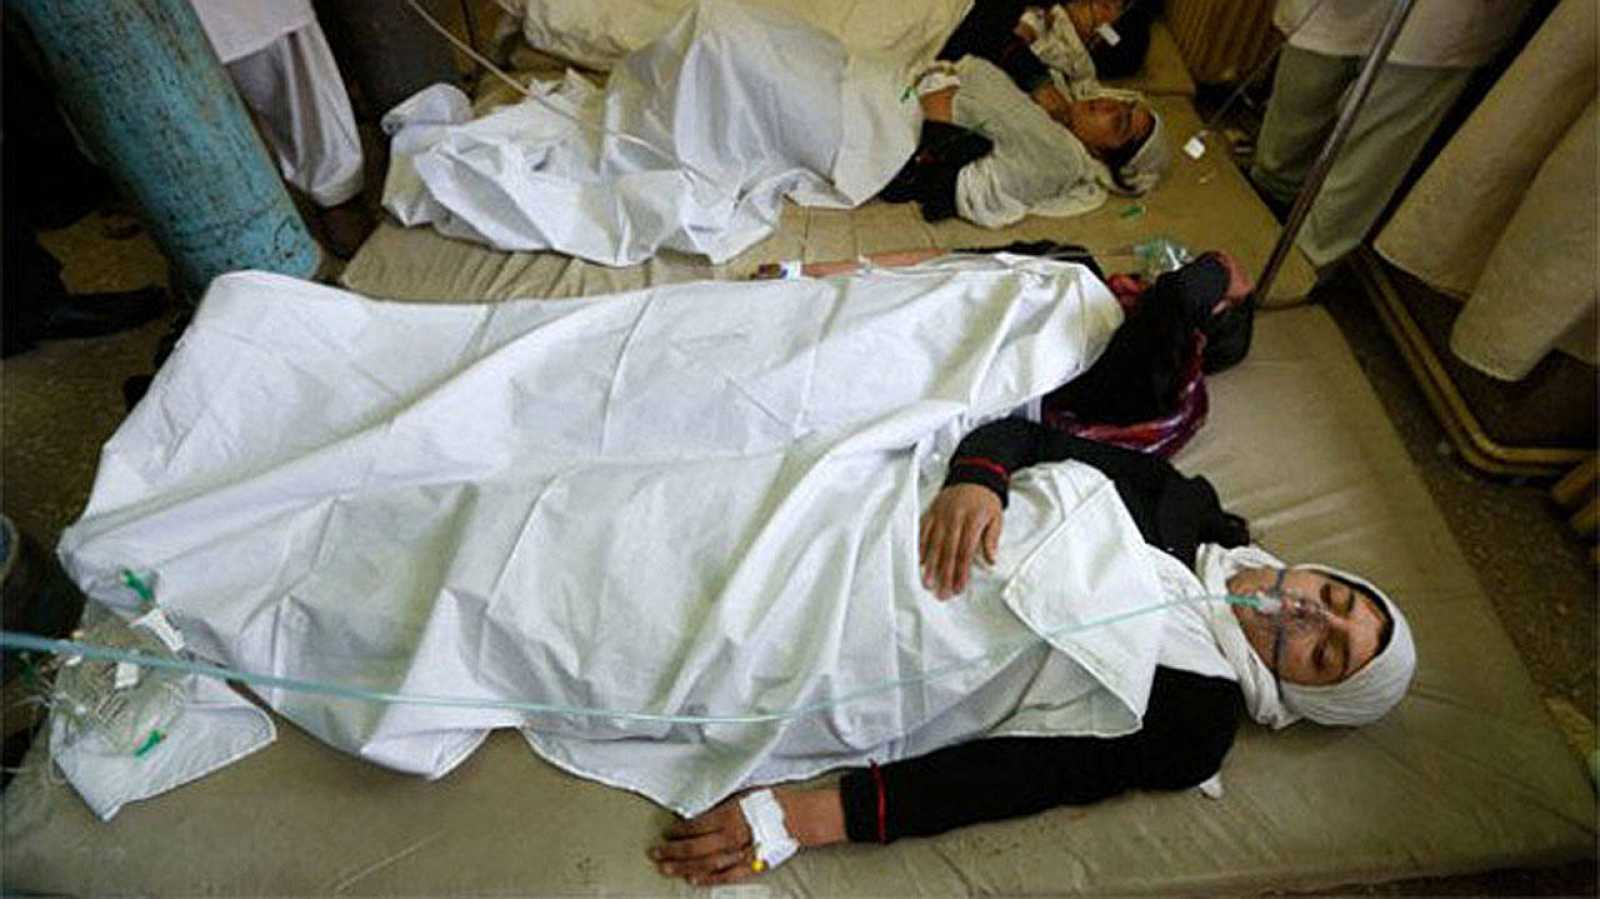 al menos 82 ninas son envenenadas en dos colegios en el norte de afganistan laverdaddemonagas.com img2.rtve